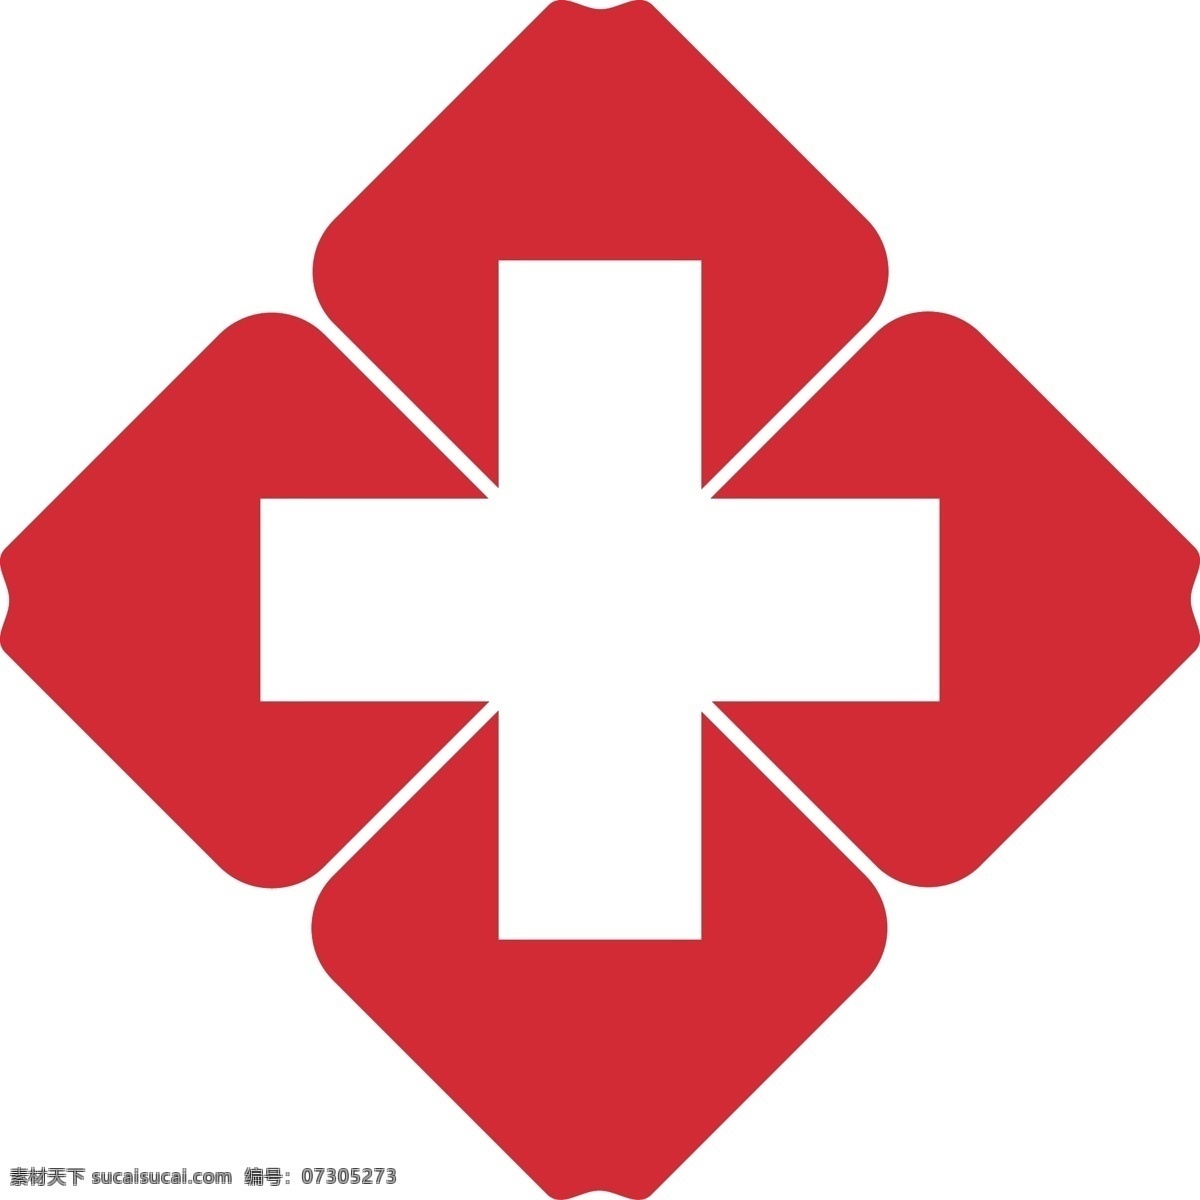 红十字会 标志 红十字会标志 logo 红色 白色 十字架 医院标志 医院logo 标志图标 公共标识标志